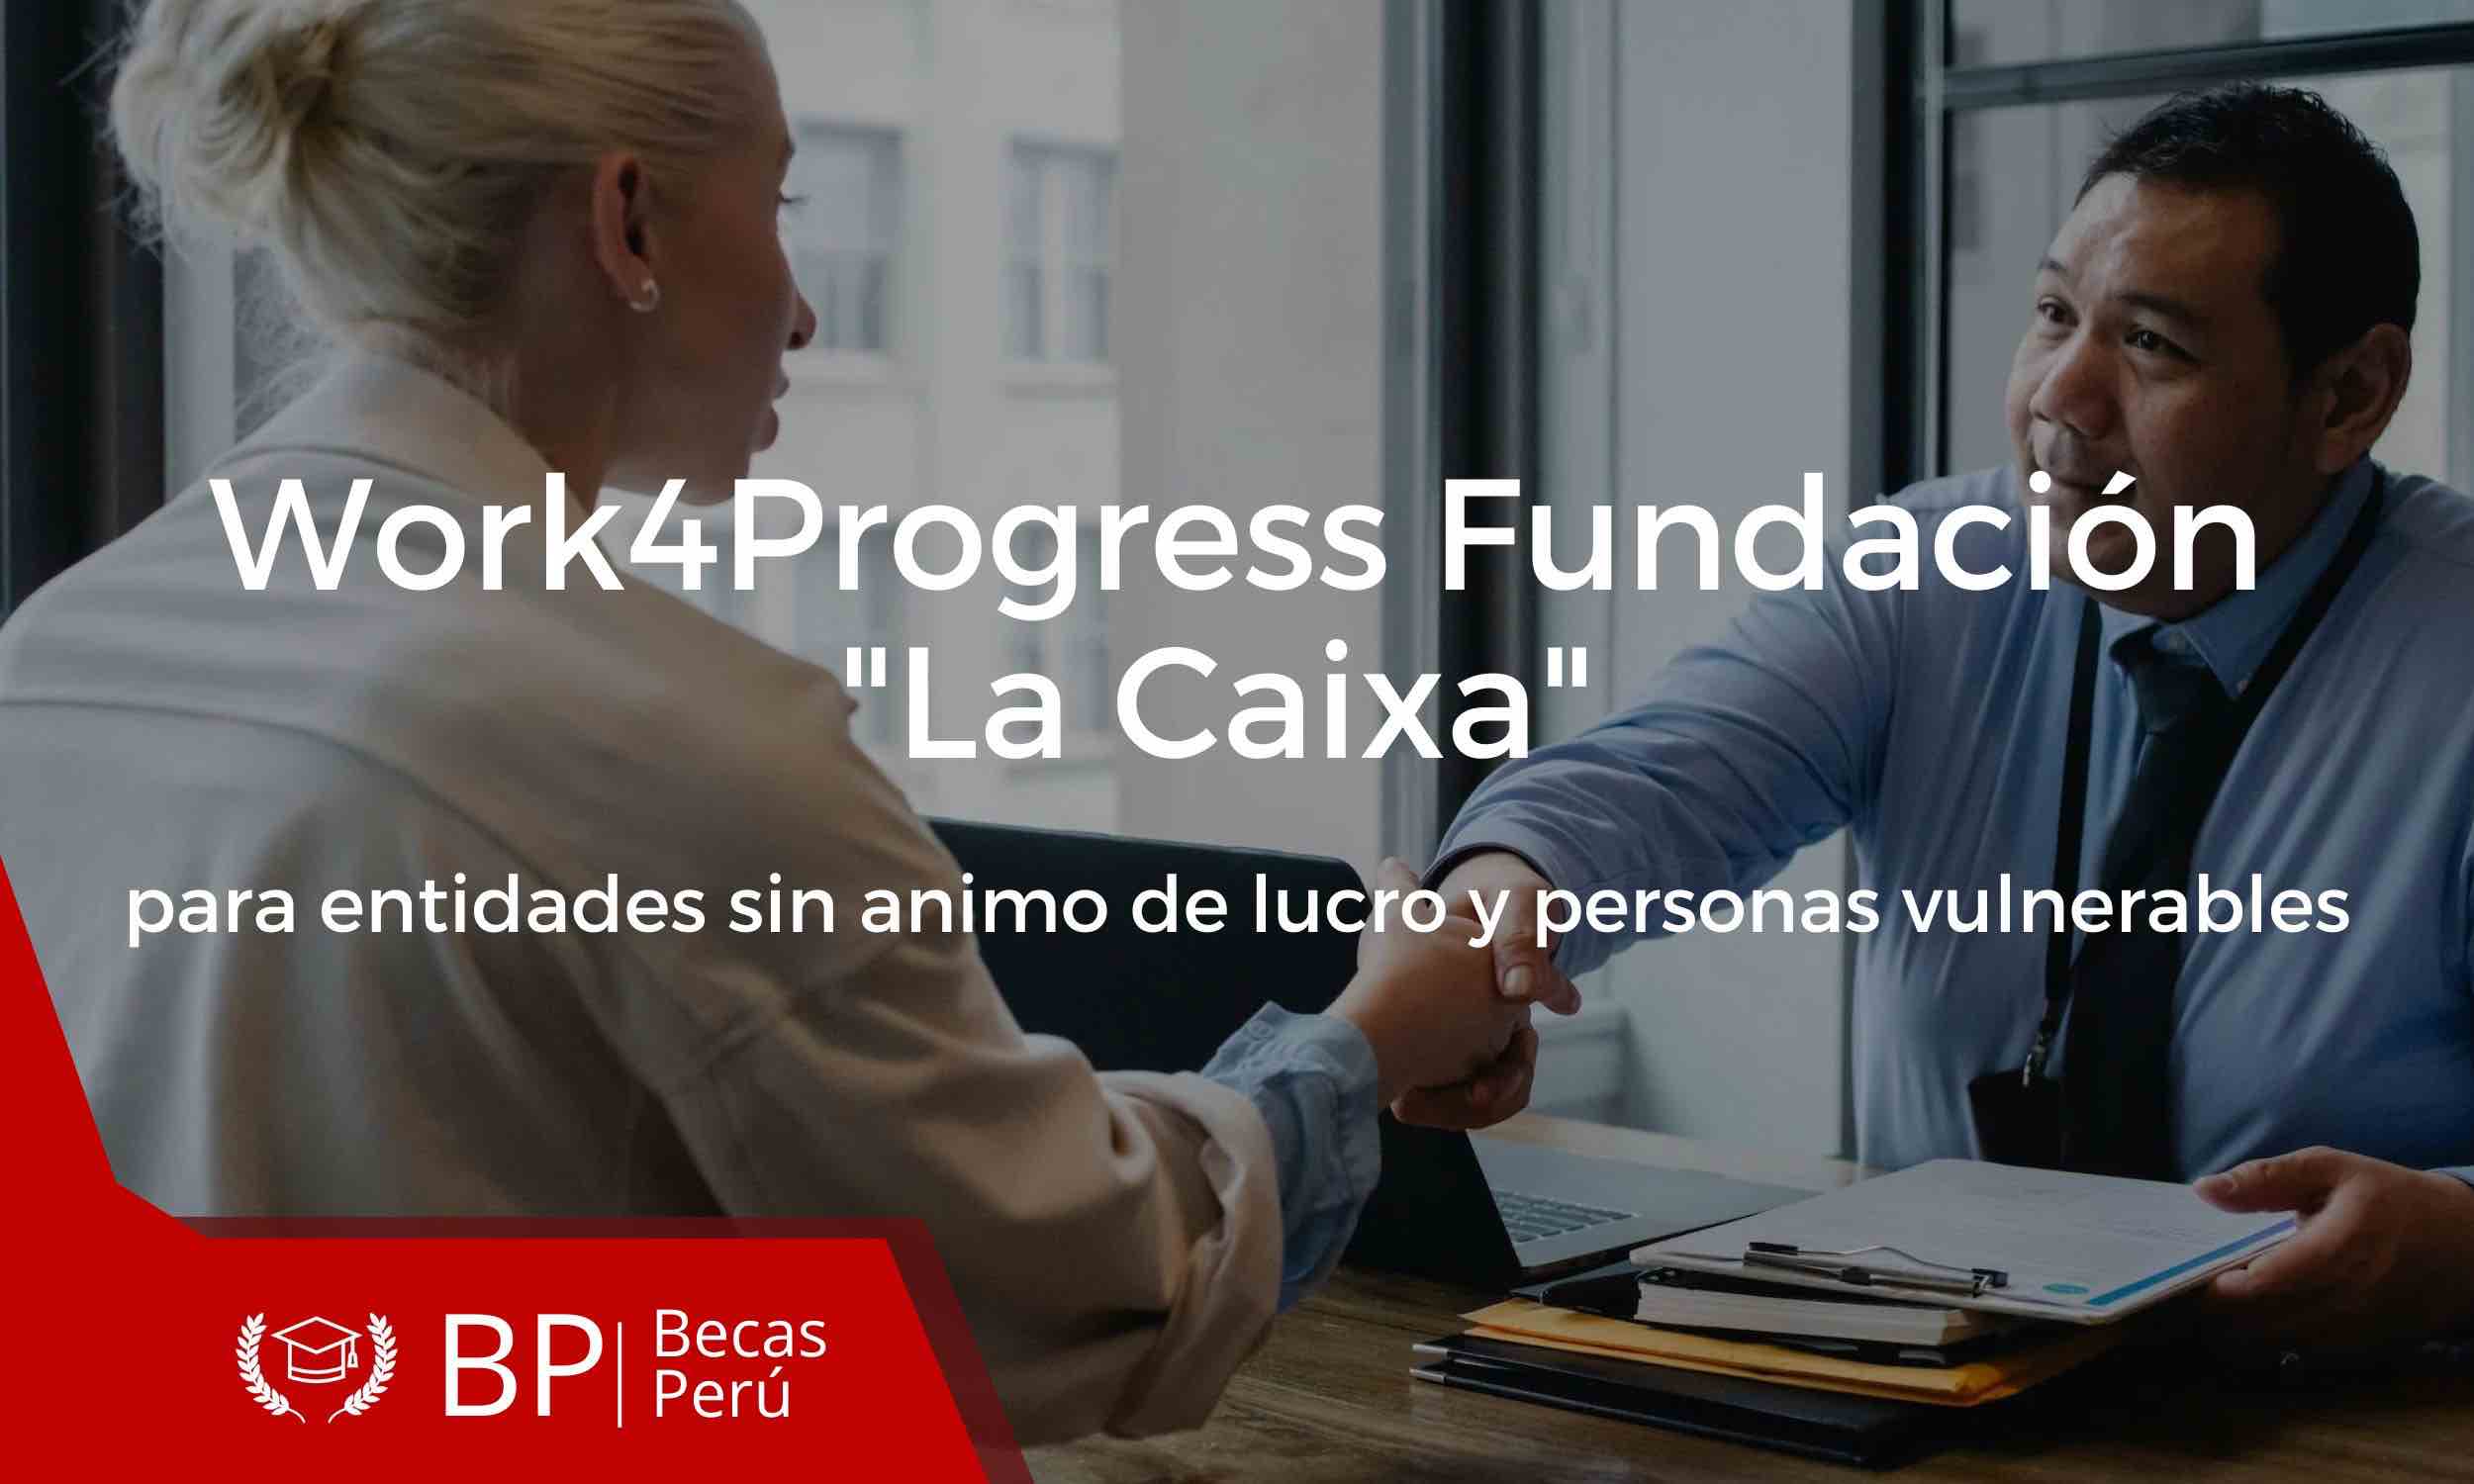 Wor4Progress Fundación La Caixa para entidades sin animo de lucro y personas vulnerables